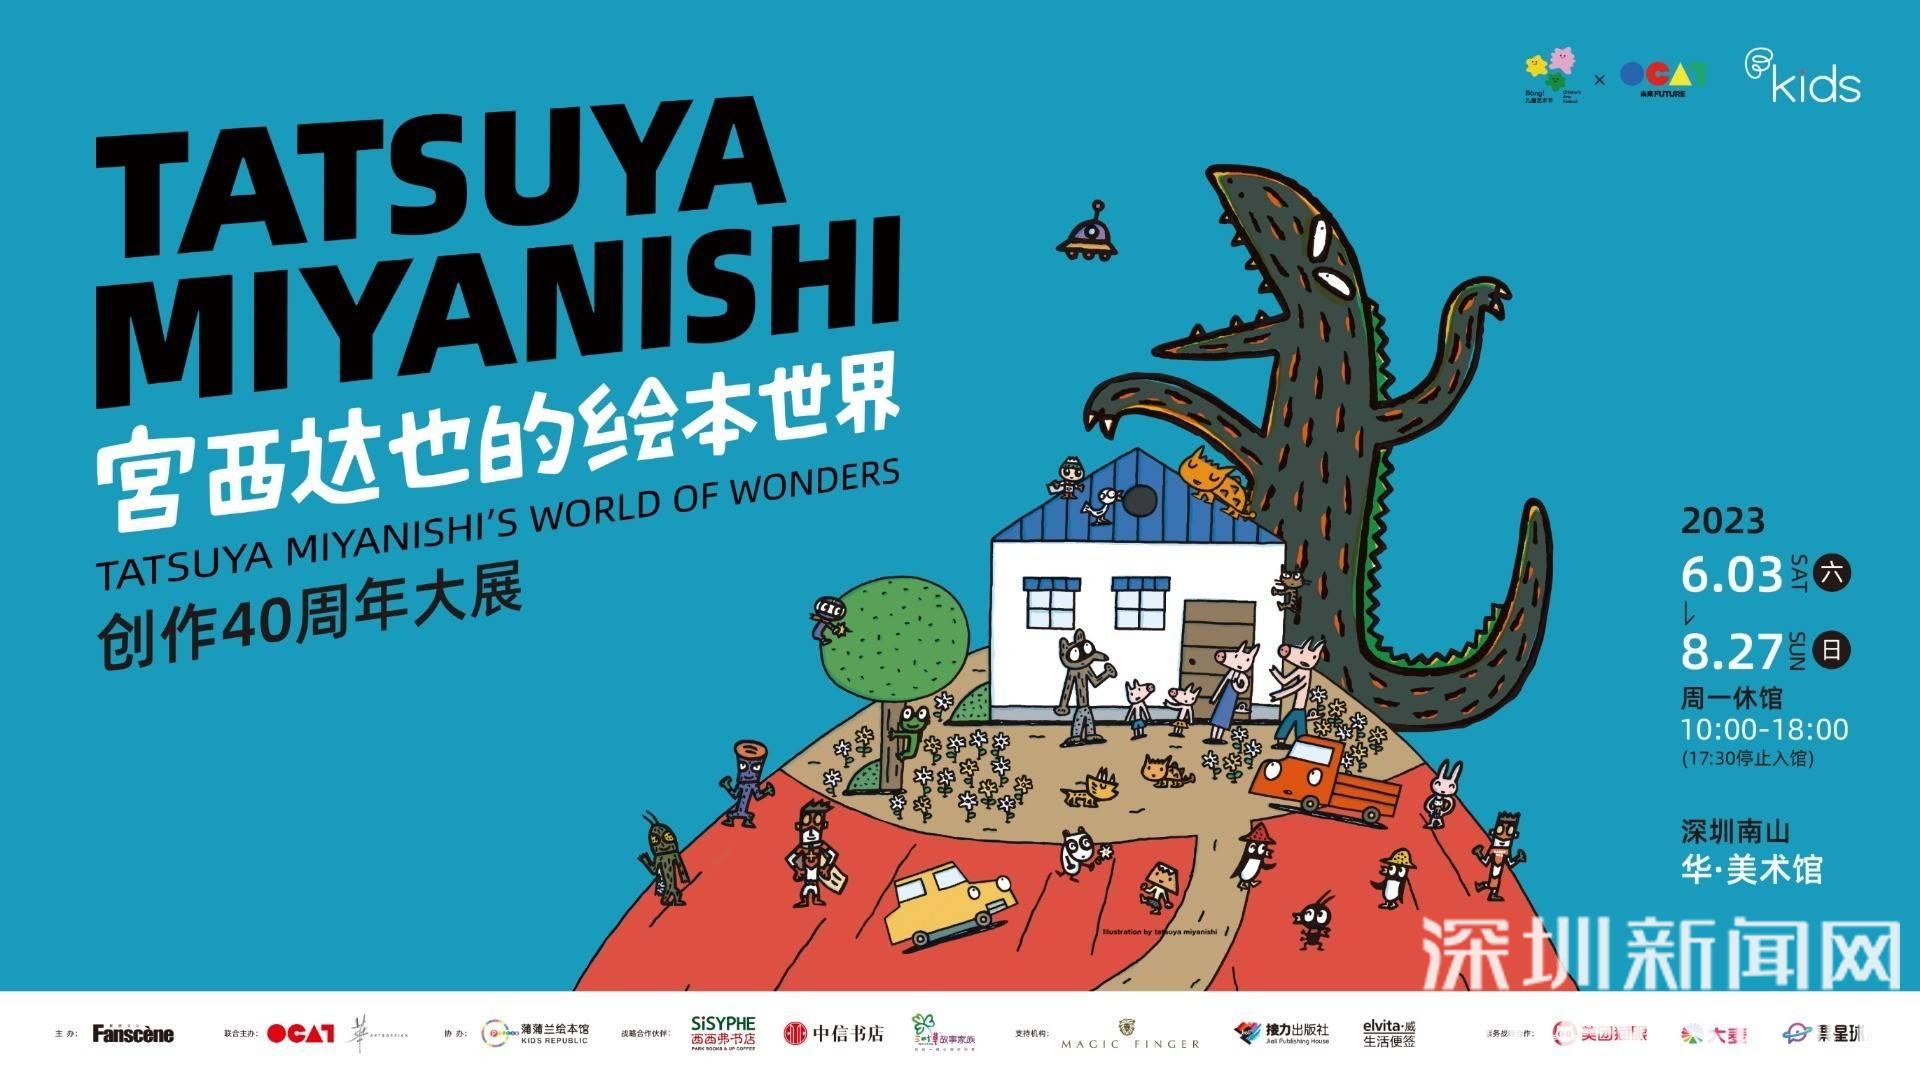 《宫西达也的绘本世界》创作40周年大展深圳站启动